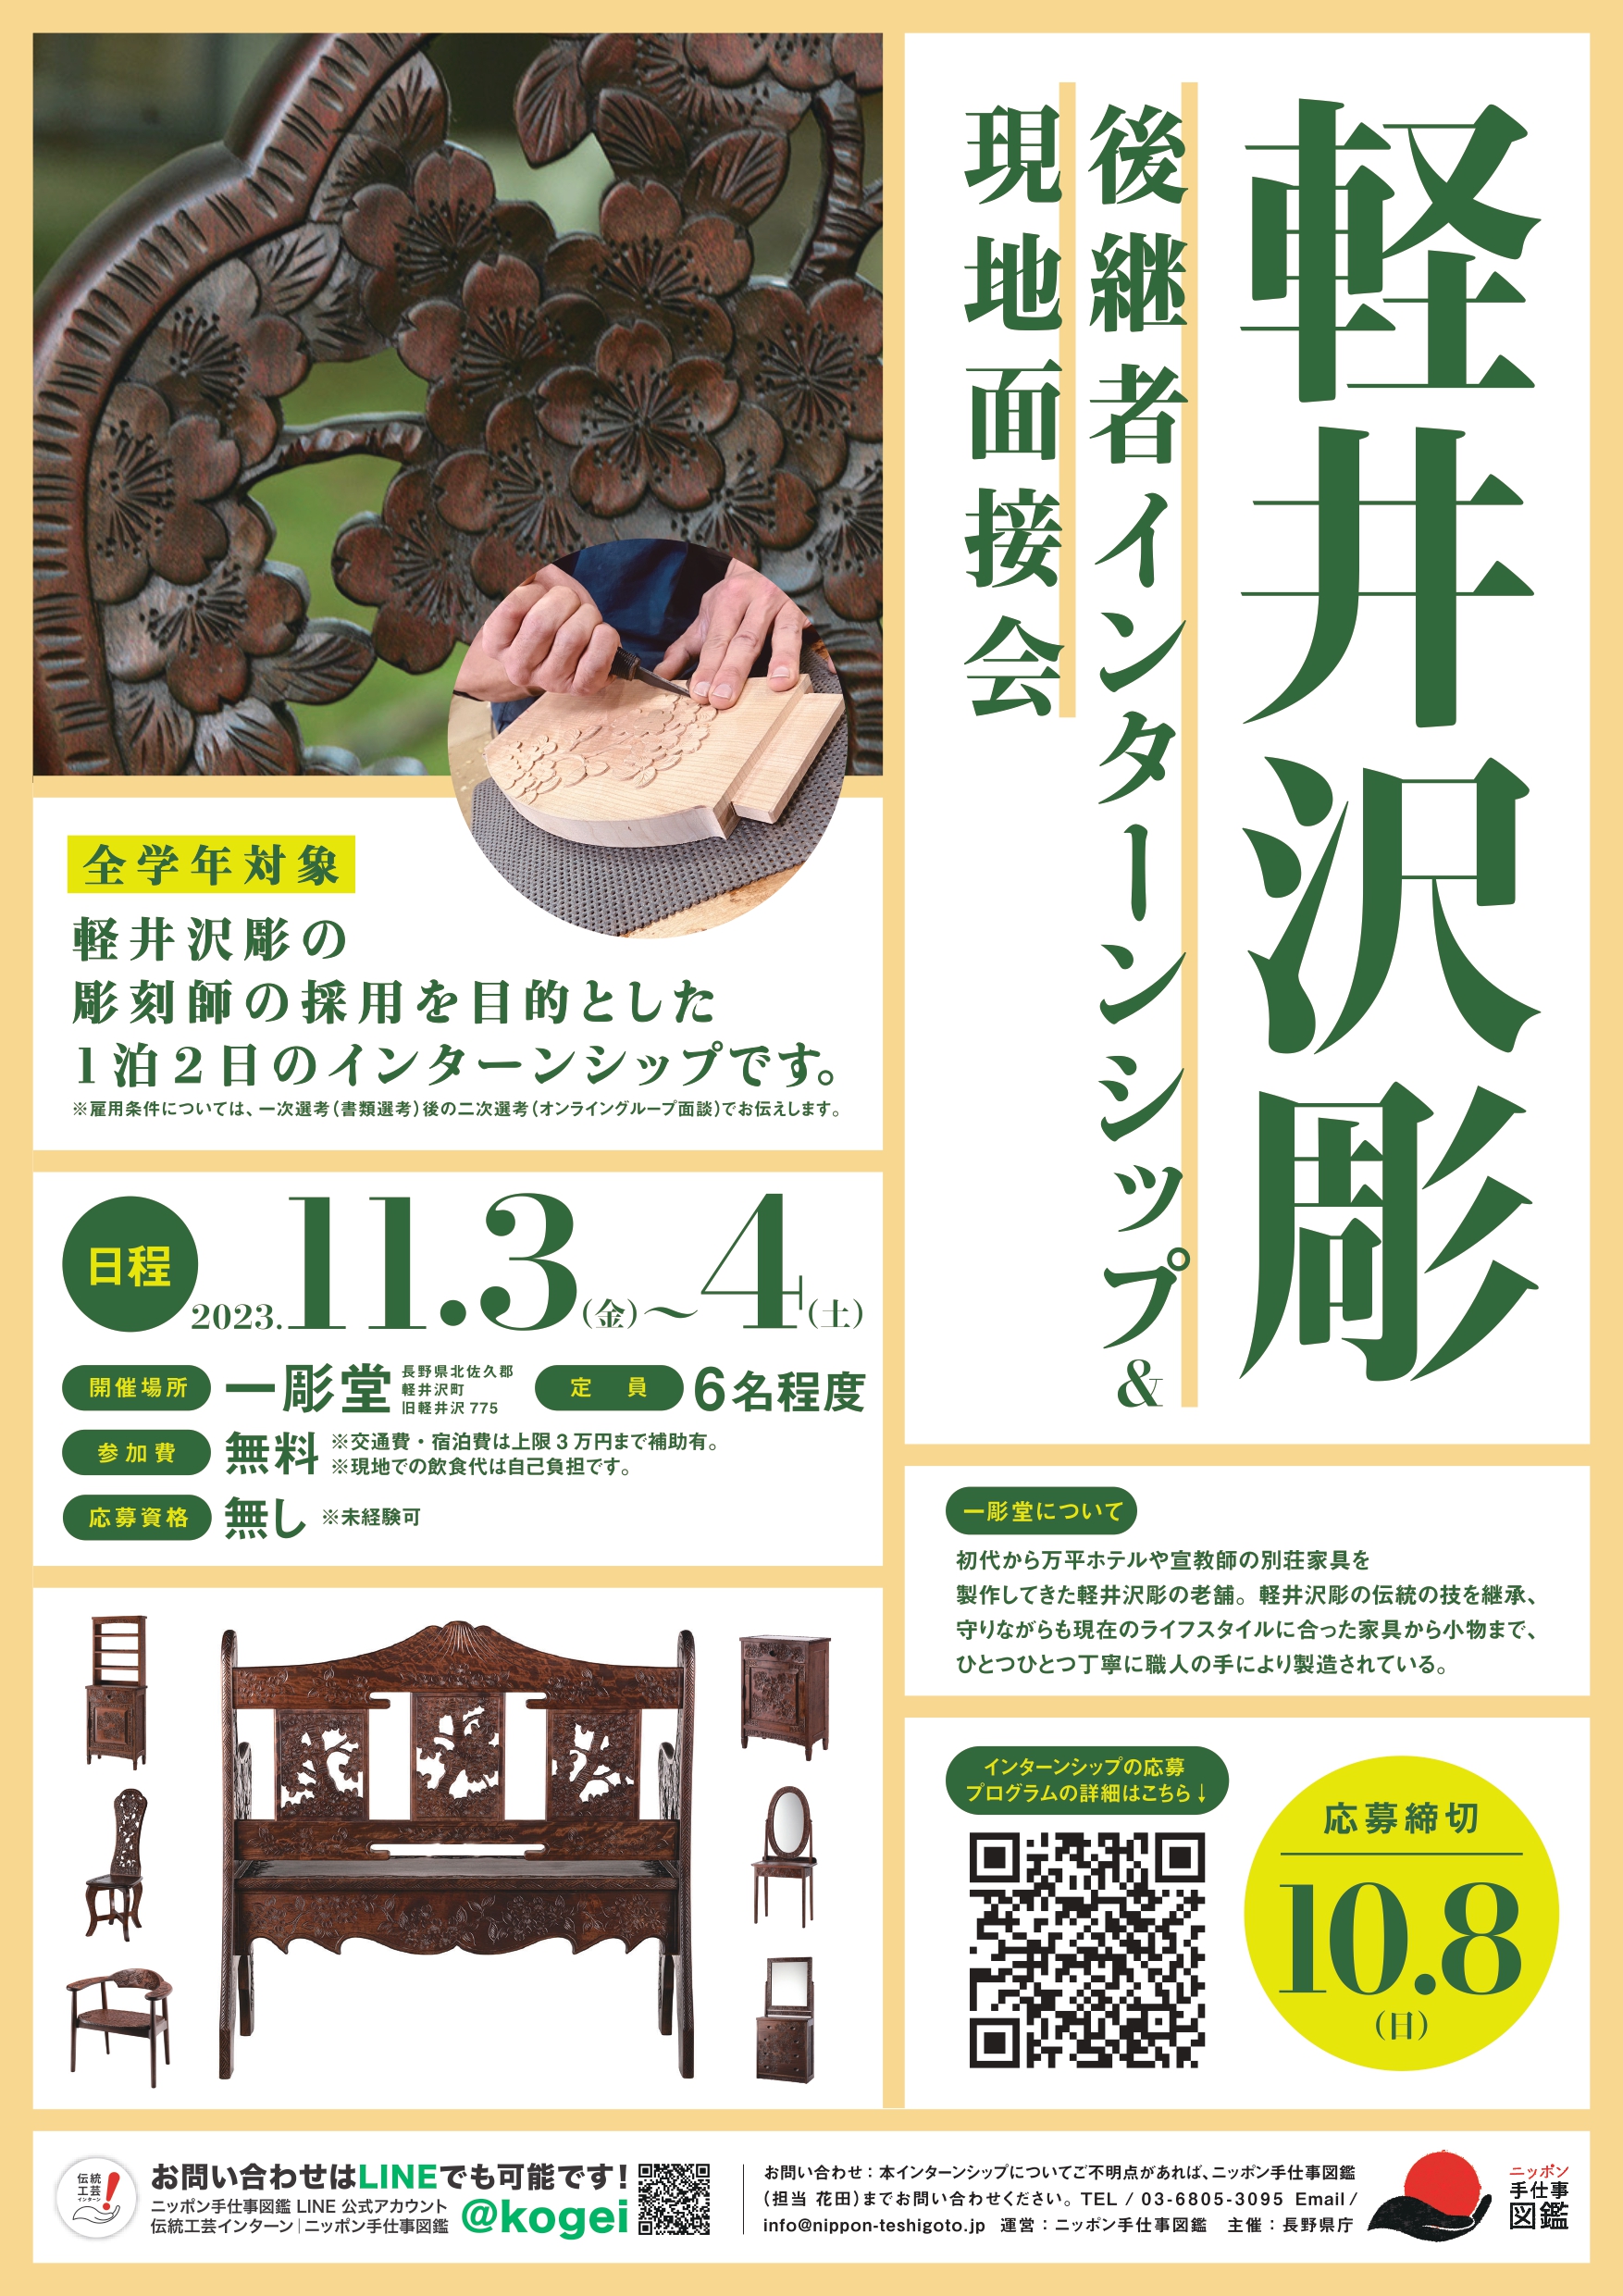 国指定伝統的工芸品 軽井沢彫後継者インターンシップポスター